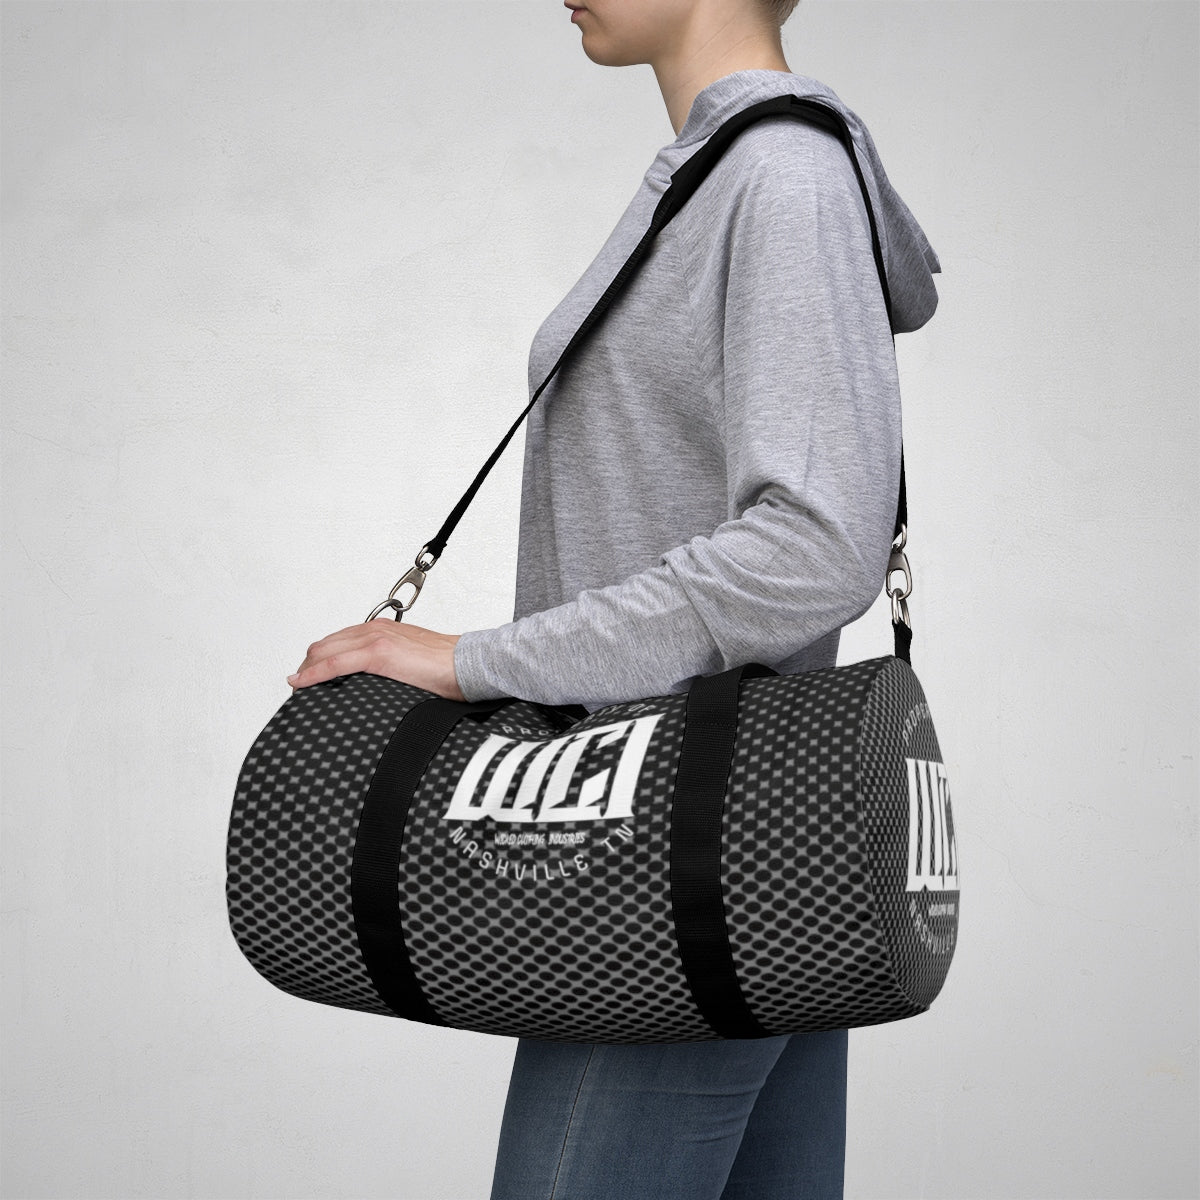 WCI/Gray/ Duffle Bag